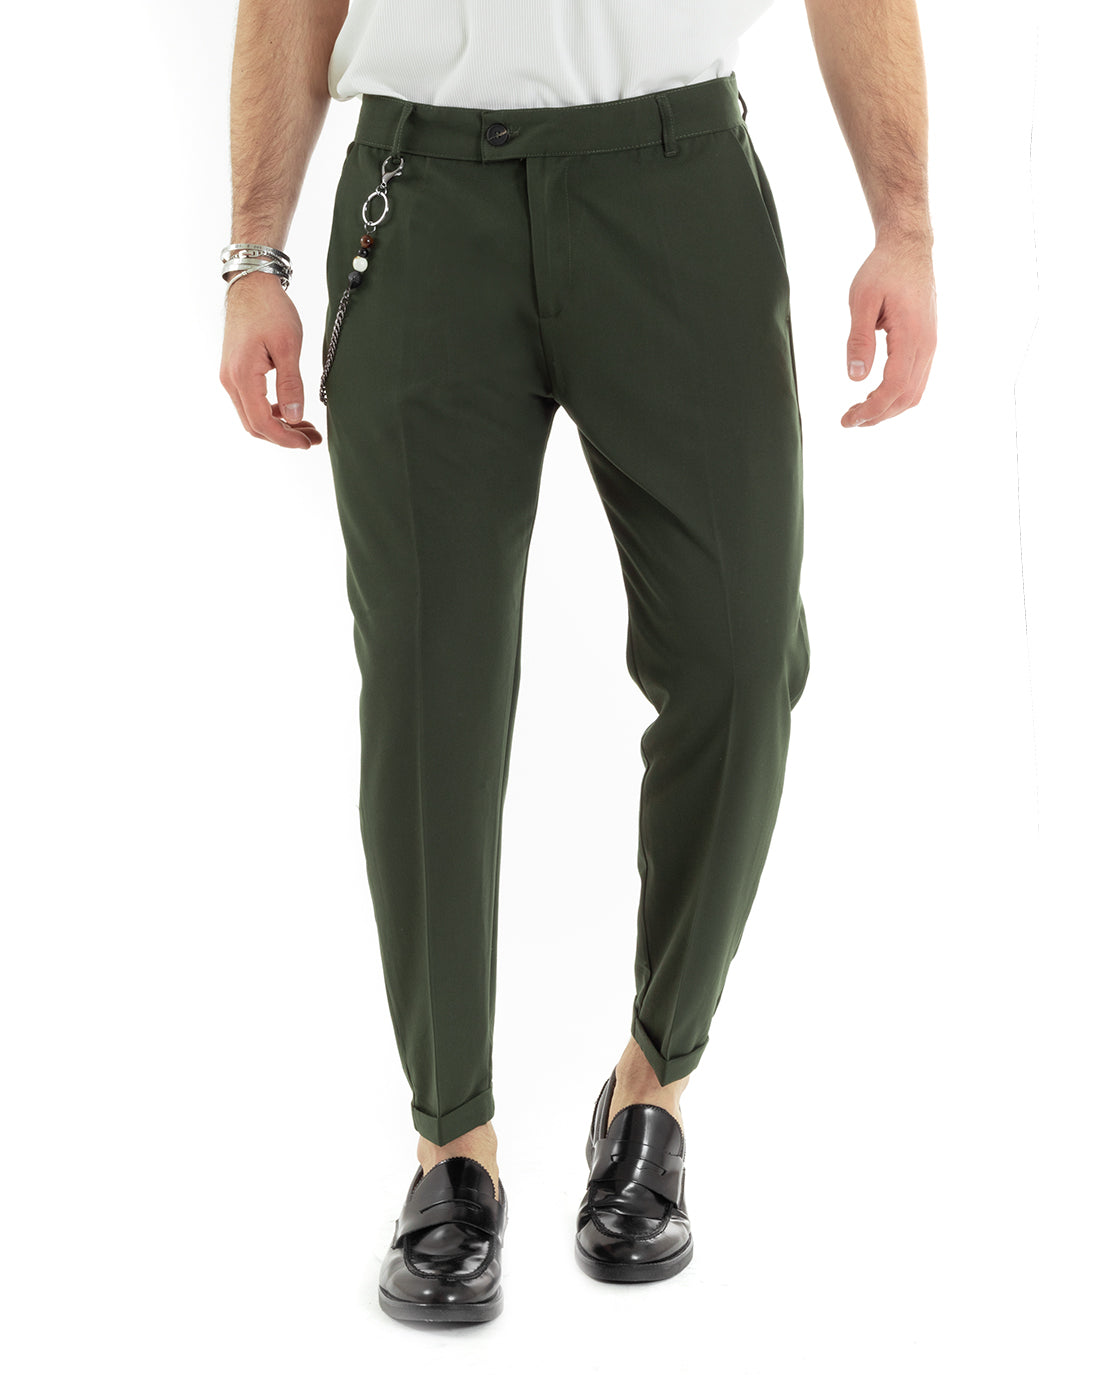 Pantaloni Uomo Viscosa Tasca America Classico Abbottonatura Allungata Casual Verde GIOSAL-P5964A